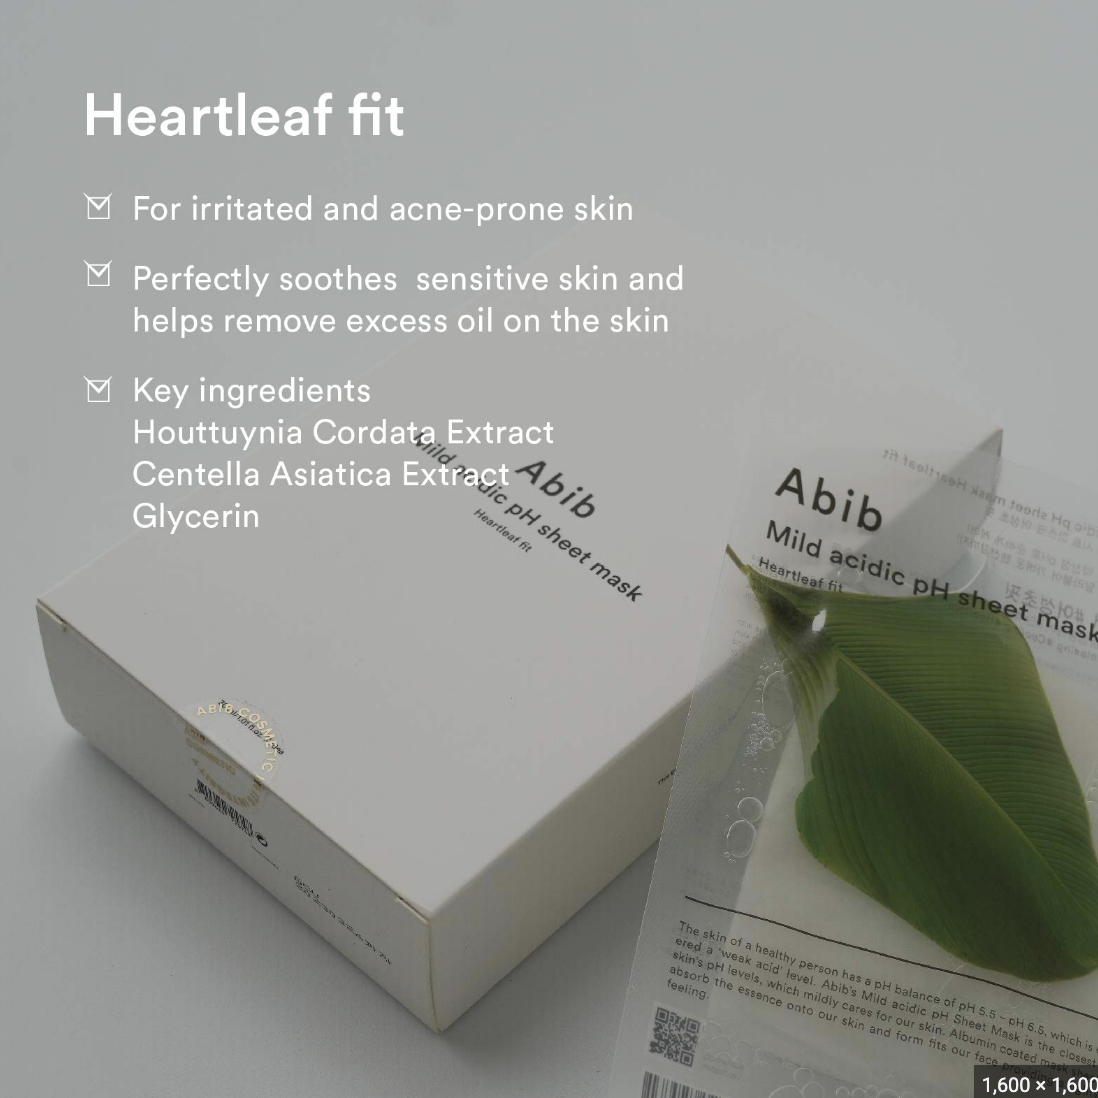 Abib Mild Acidic pH Sheet Mask Heartleaf Fit - 1 Pack of 10 Sheets